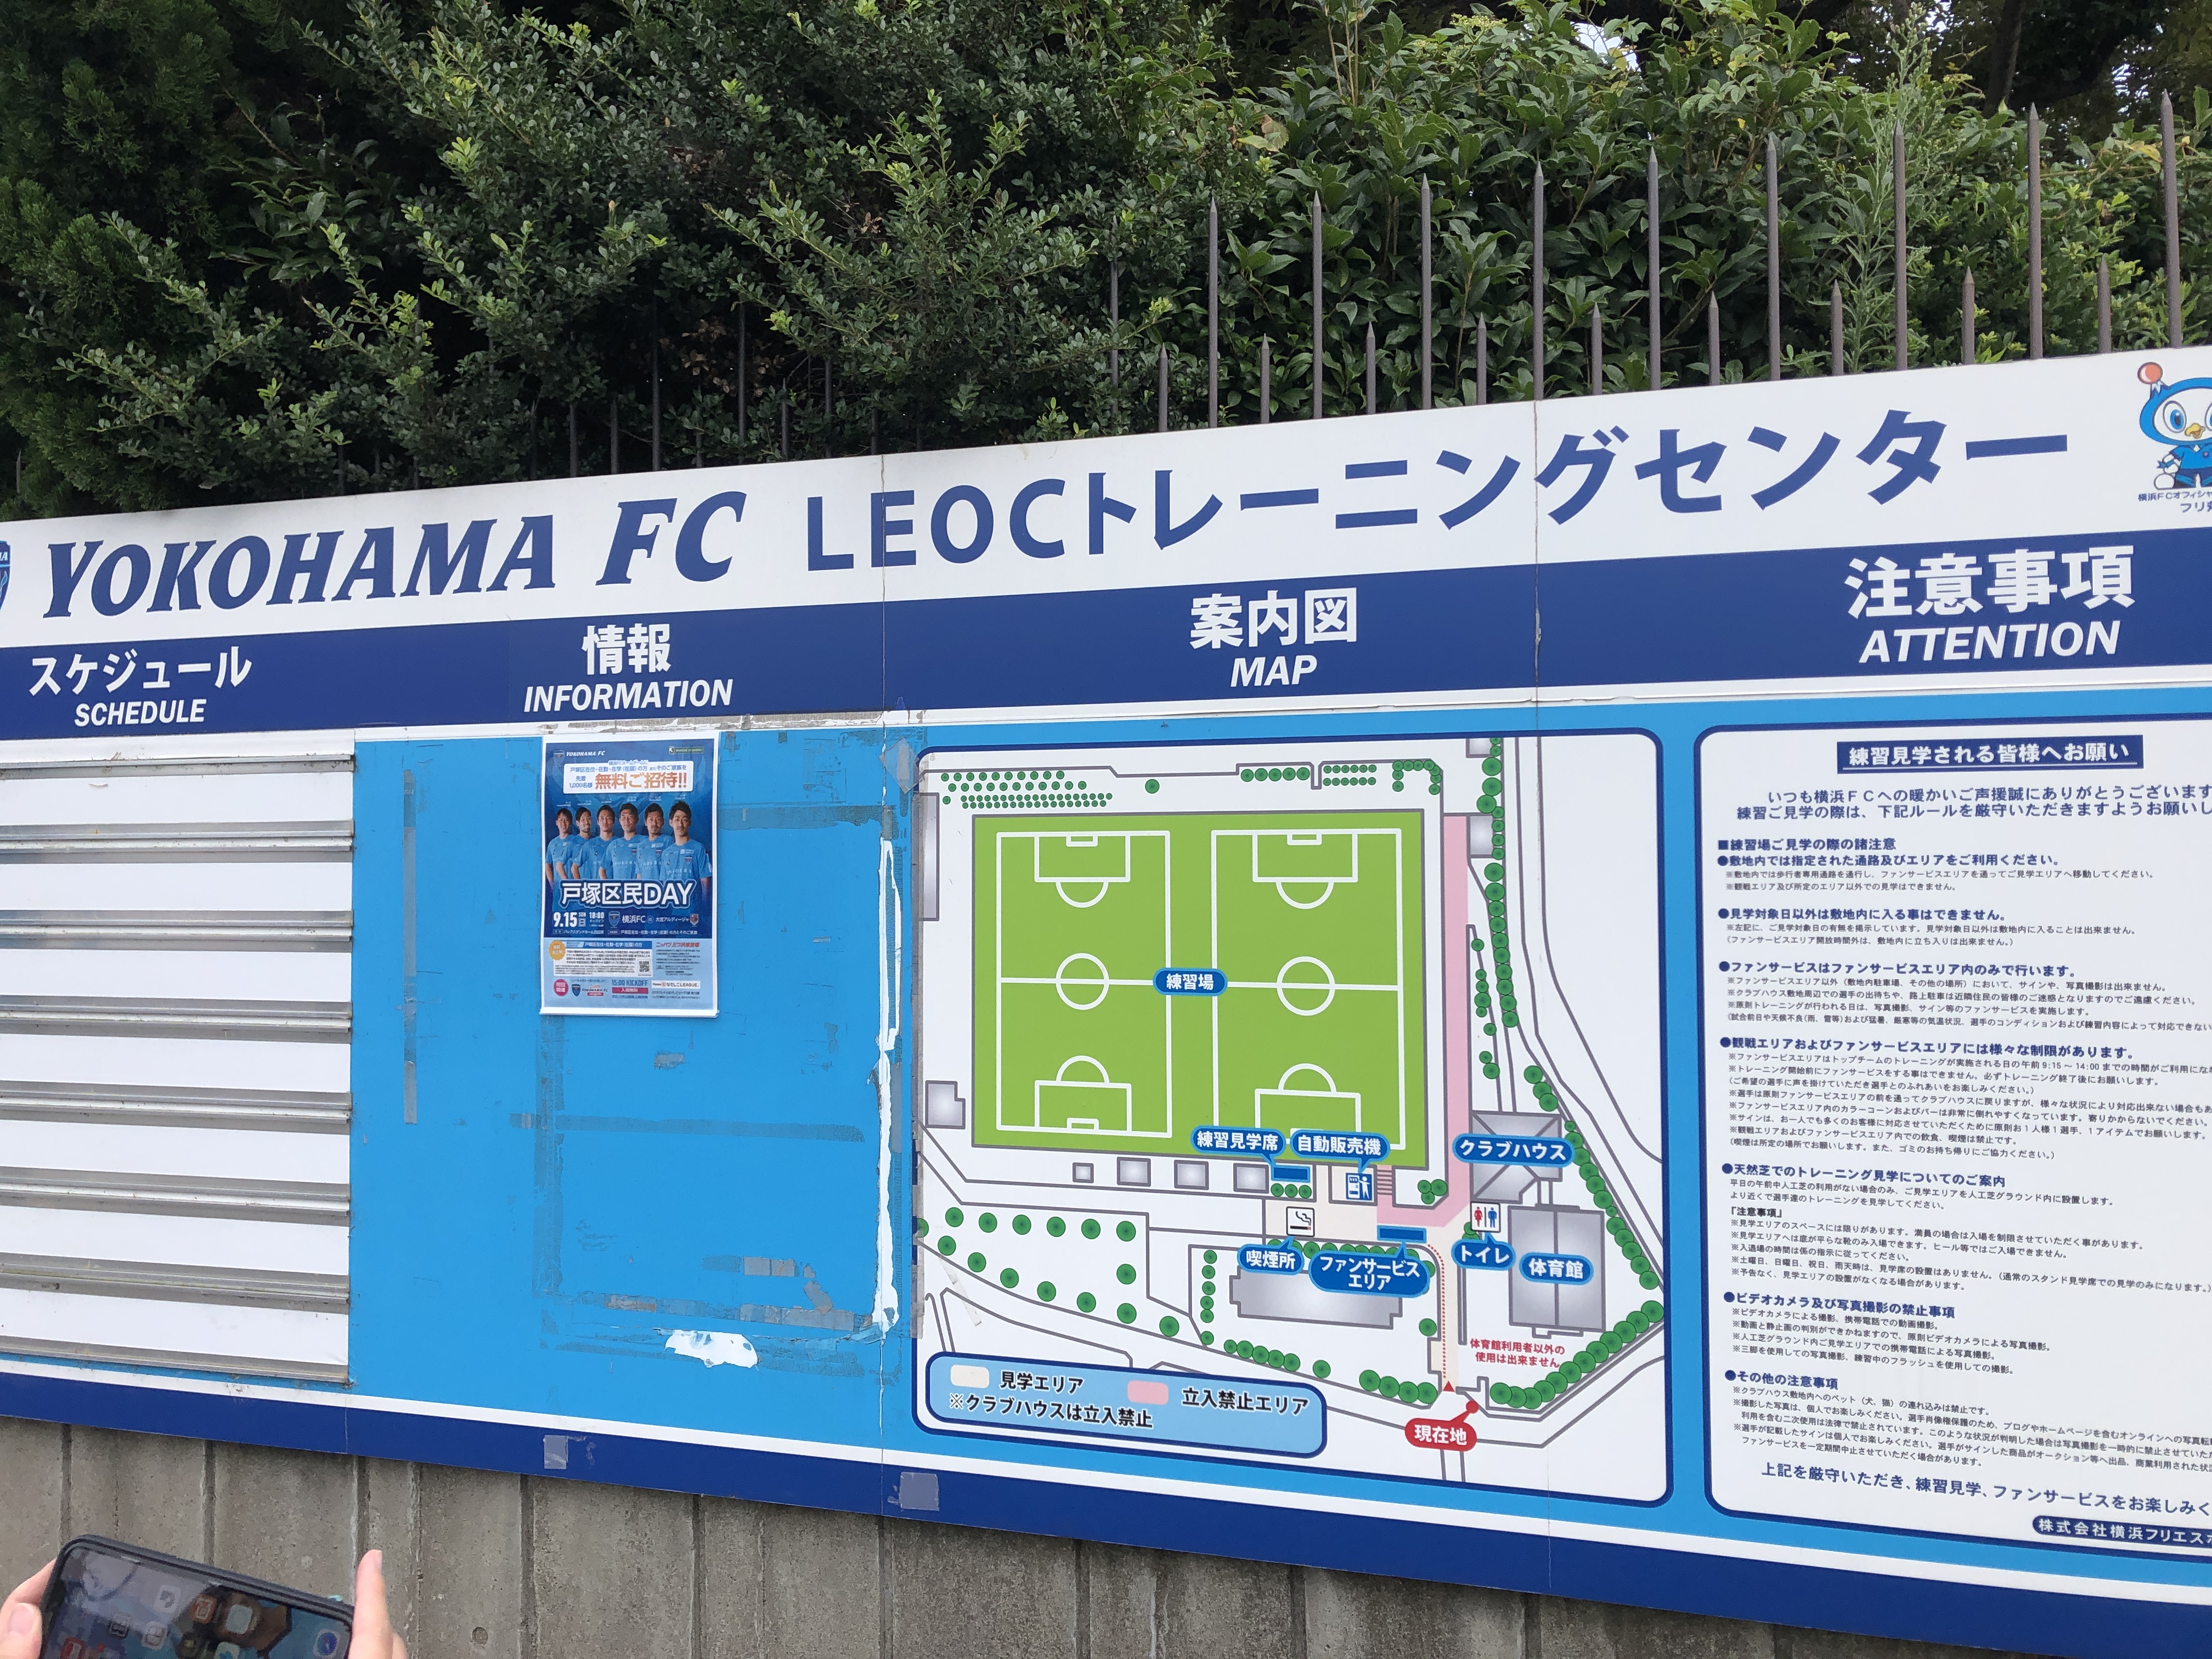 横浜fcの斉藤光毅選手から学ぶ濃いファンの作り方とは 名前も知らんかったけど超応援してます サッカーでいつもベンチの子供の親が本音で語る物語